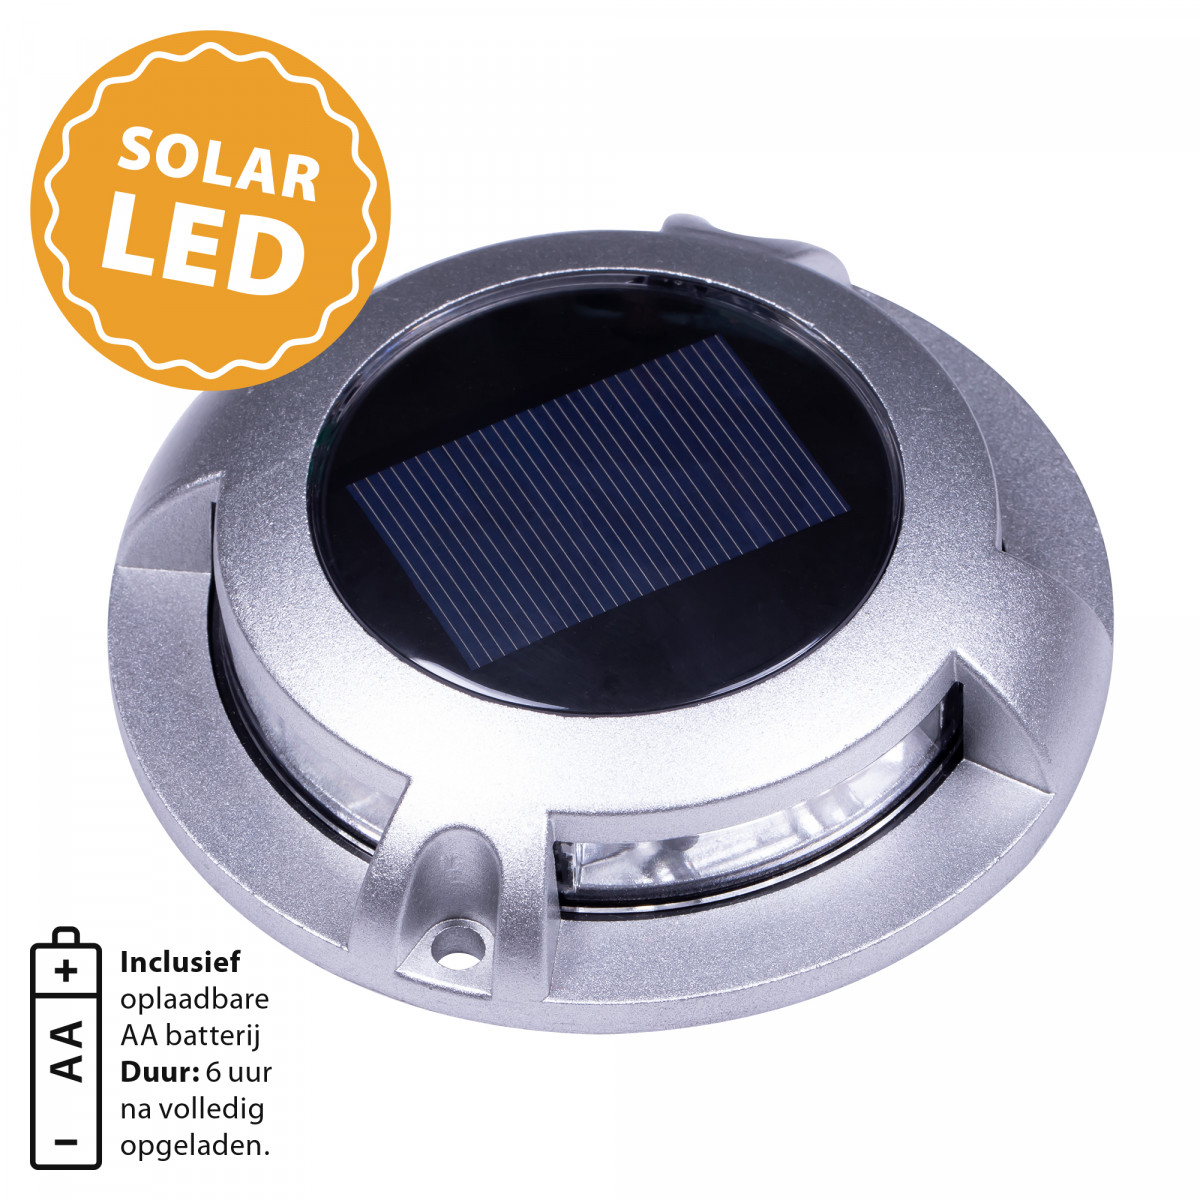 spot au sol - Solar LED Decklight - lampe solaire - spot à énergie solaire - Nostalux-Set-3, acier inoxydable